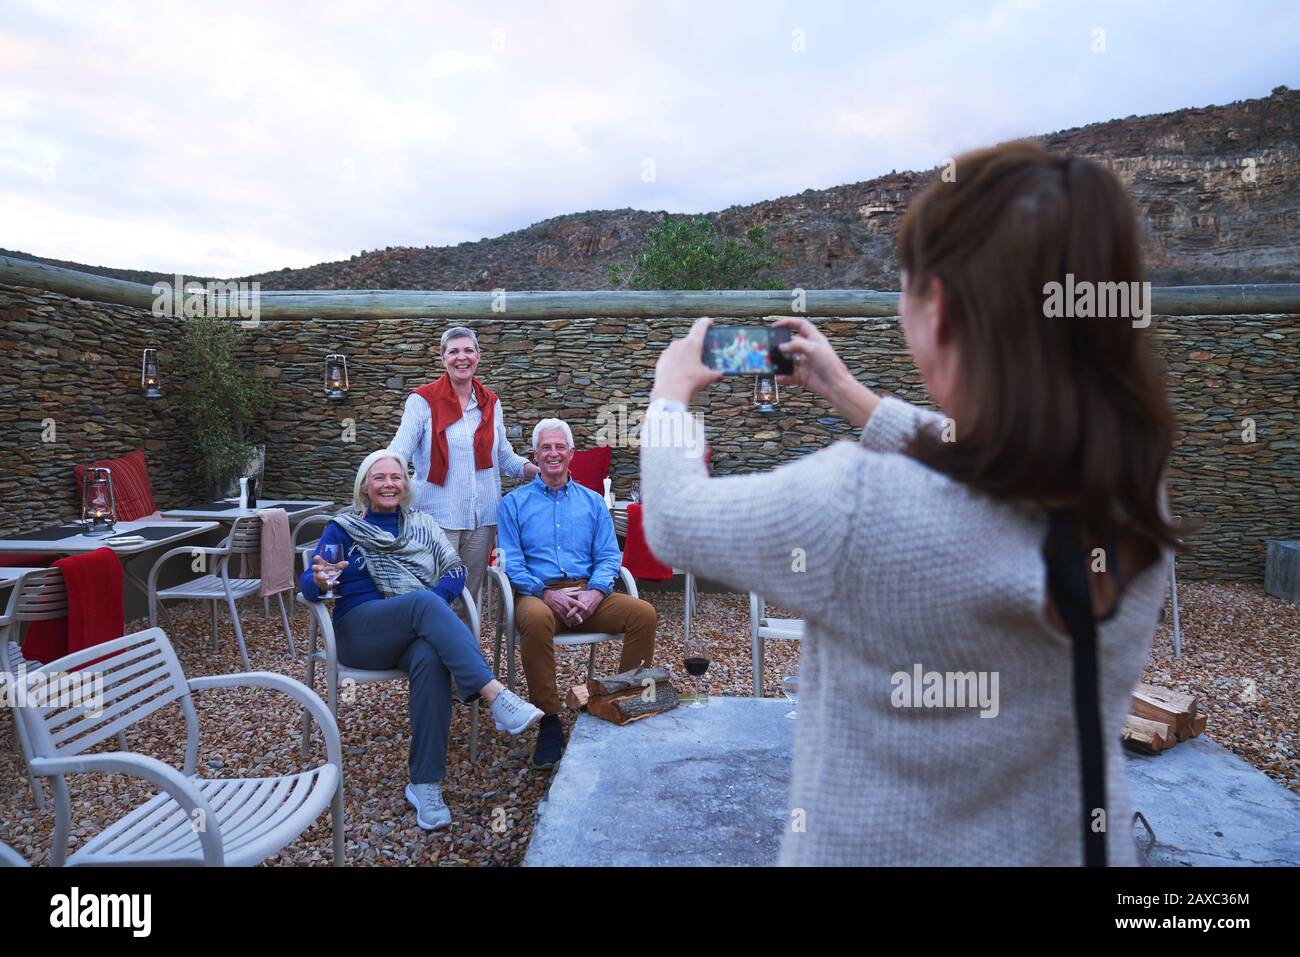 Donna con macchina fotografica telefono fotografare gli amici anziani sul patio Foto Stock